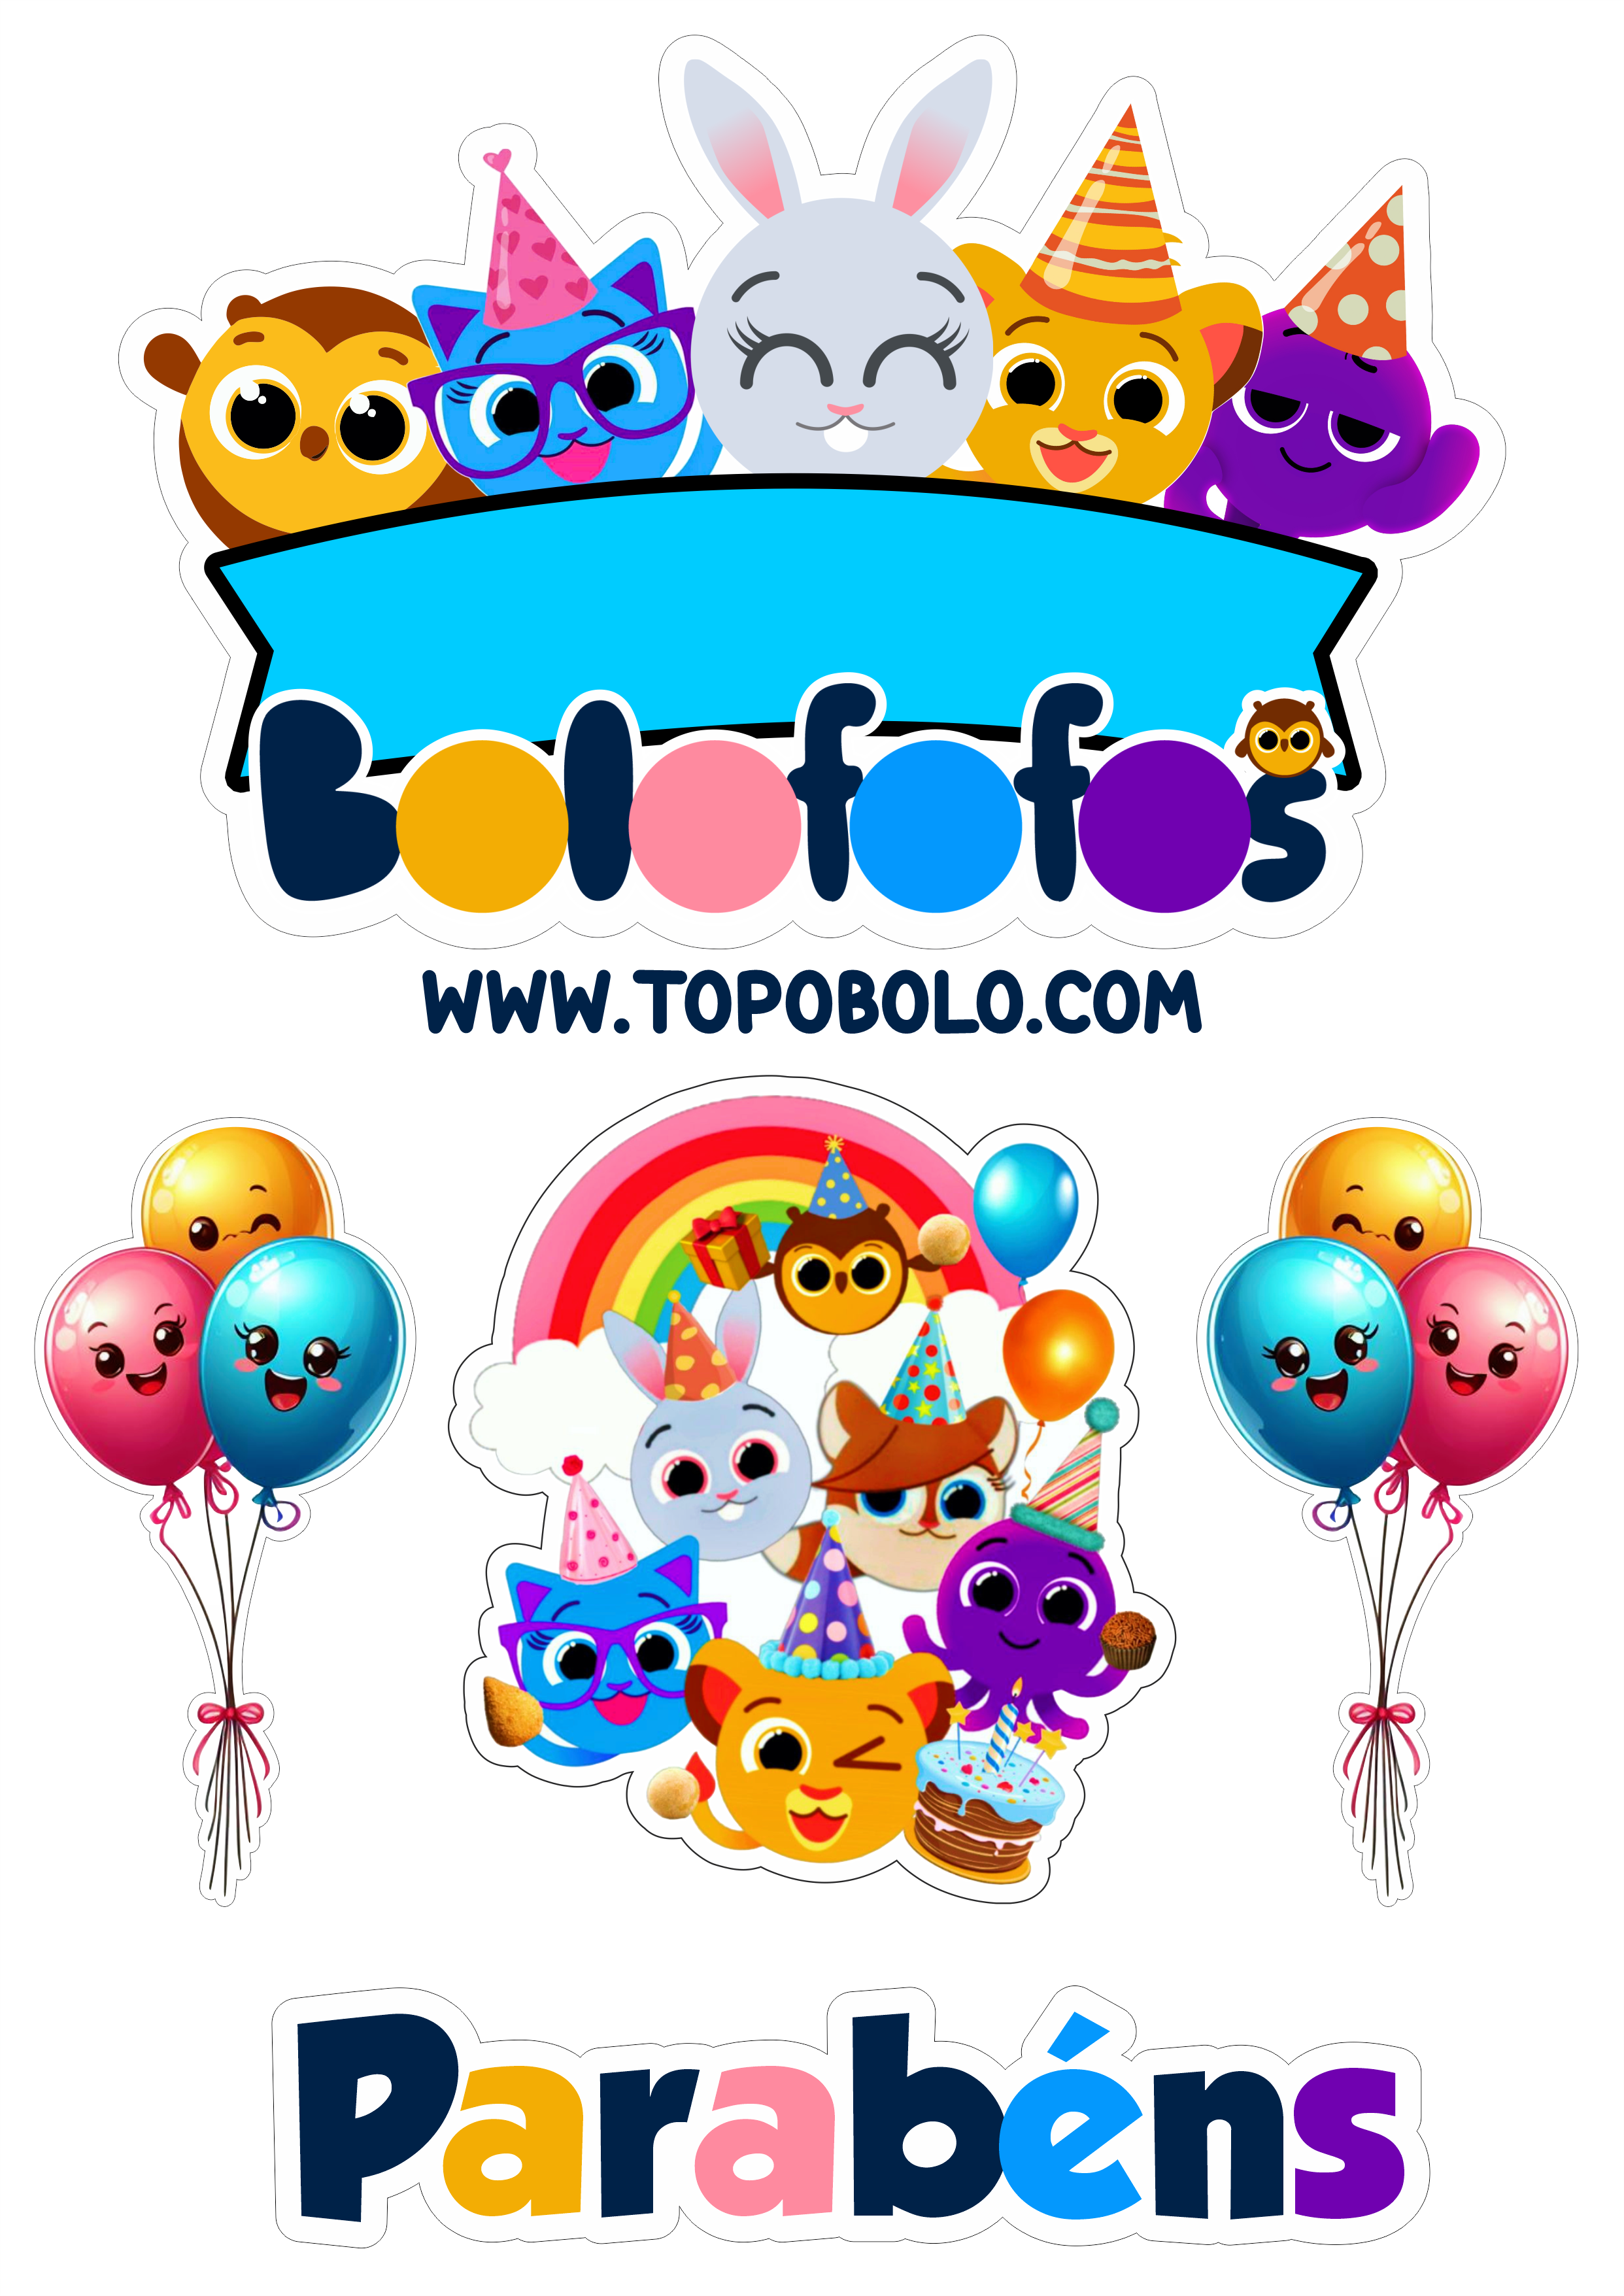 Bolofofos topo de bolo aniversário infantil decoração minha festa personalizada bichinhos parabéns balões png arco-íris